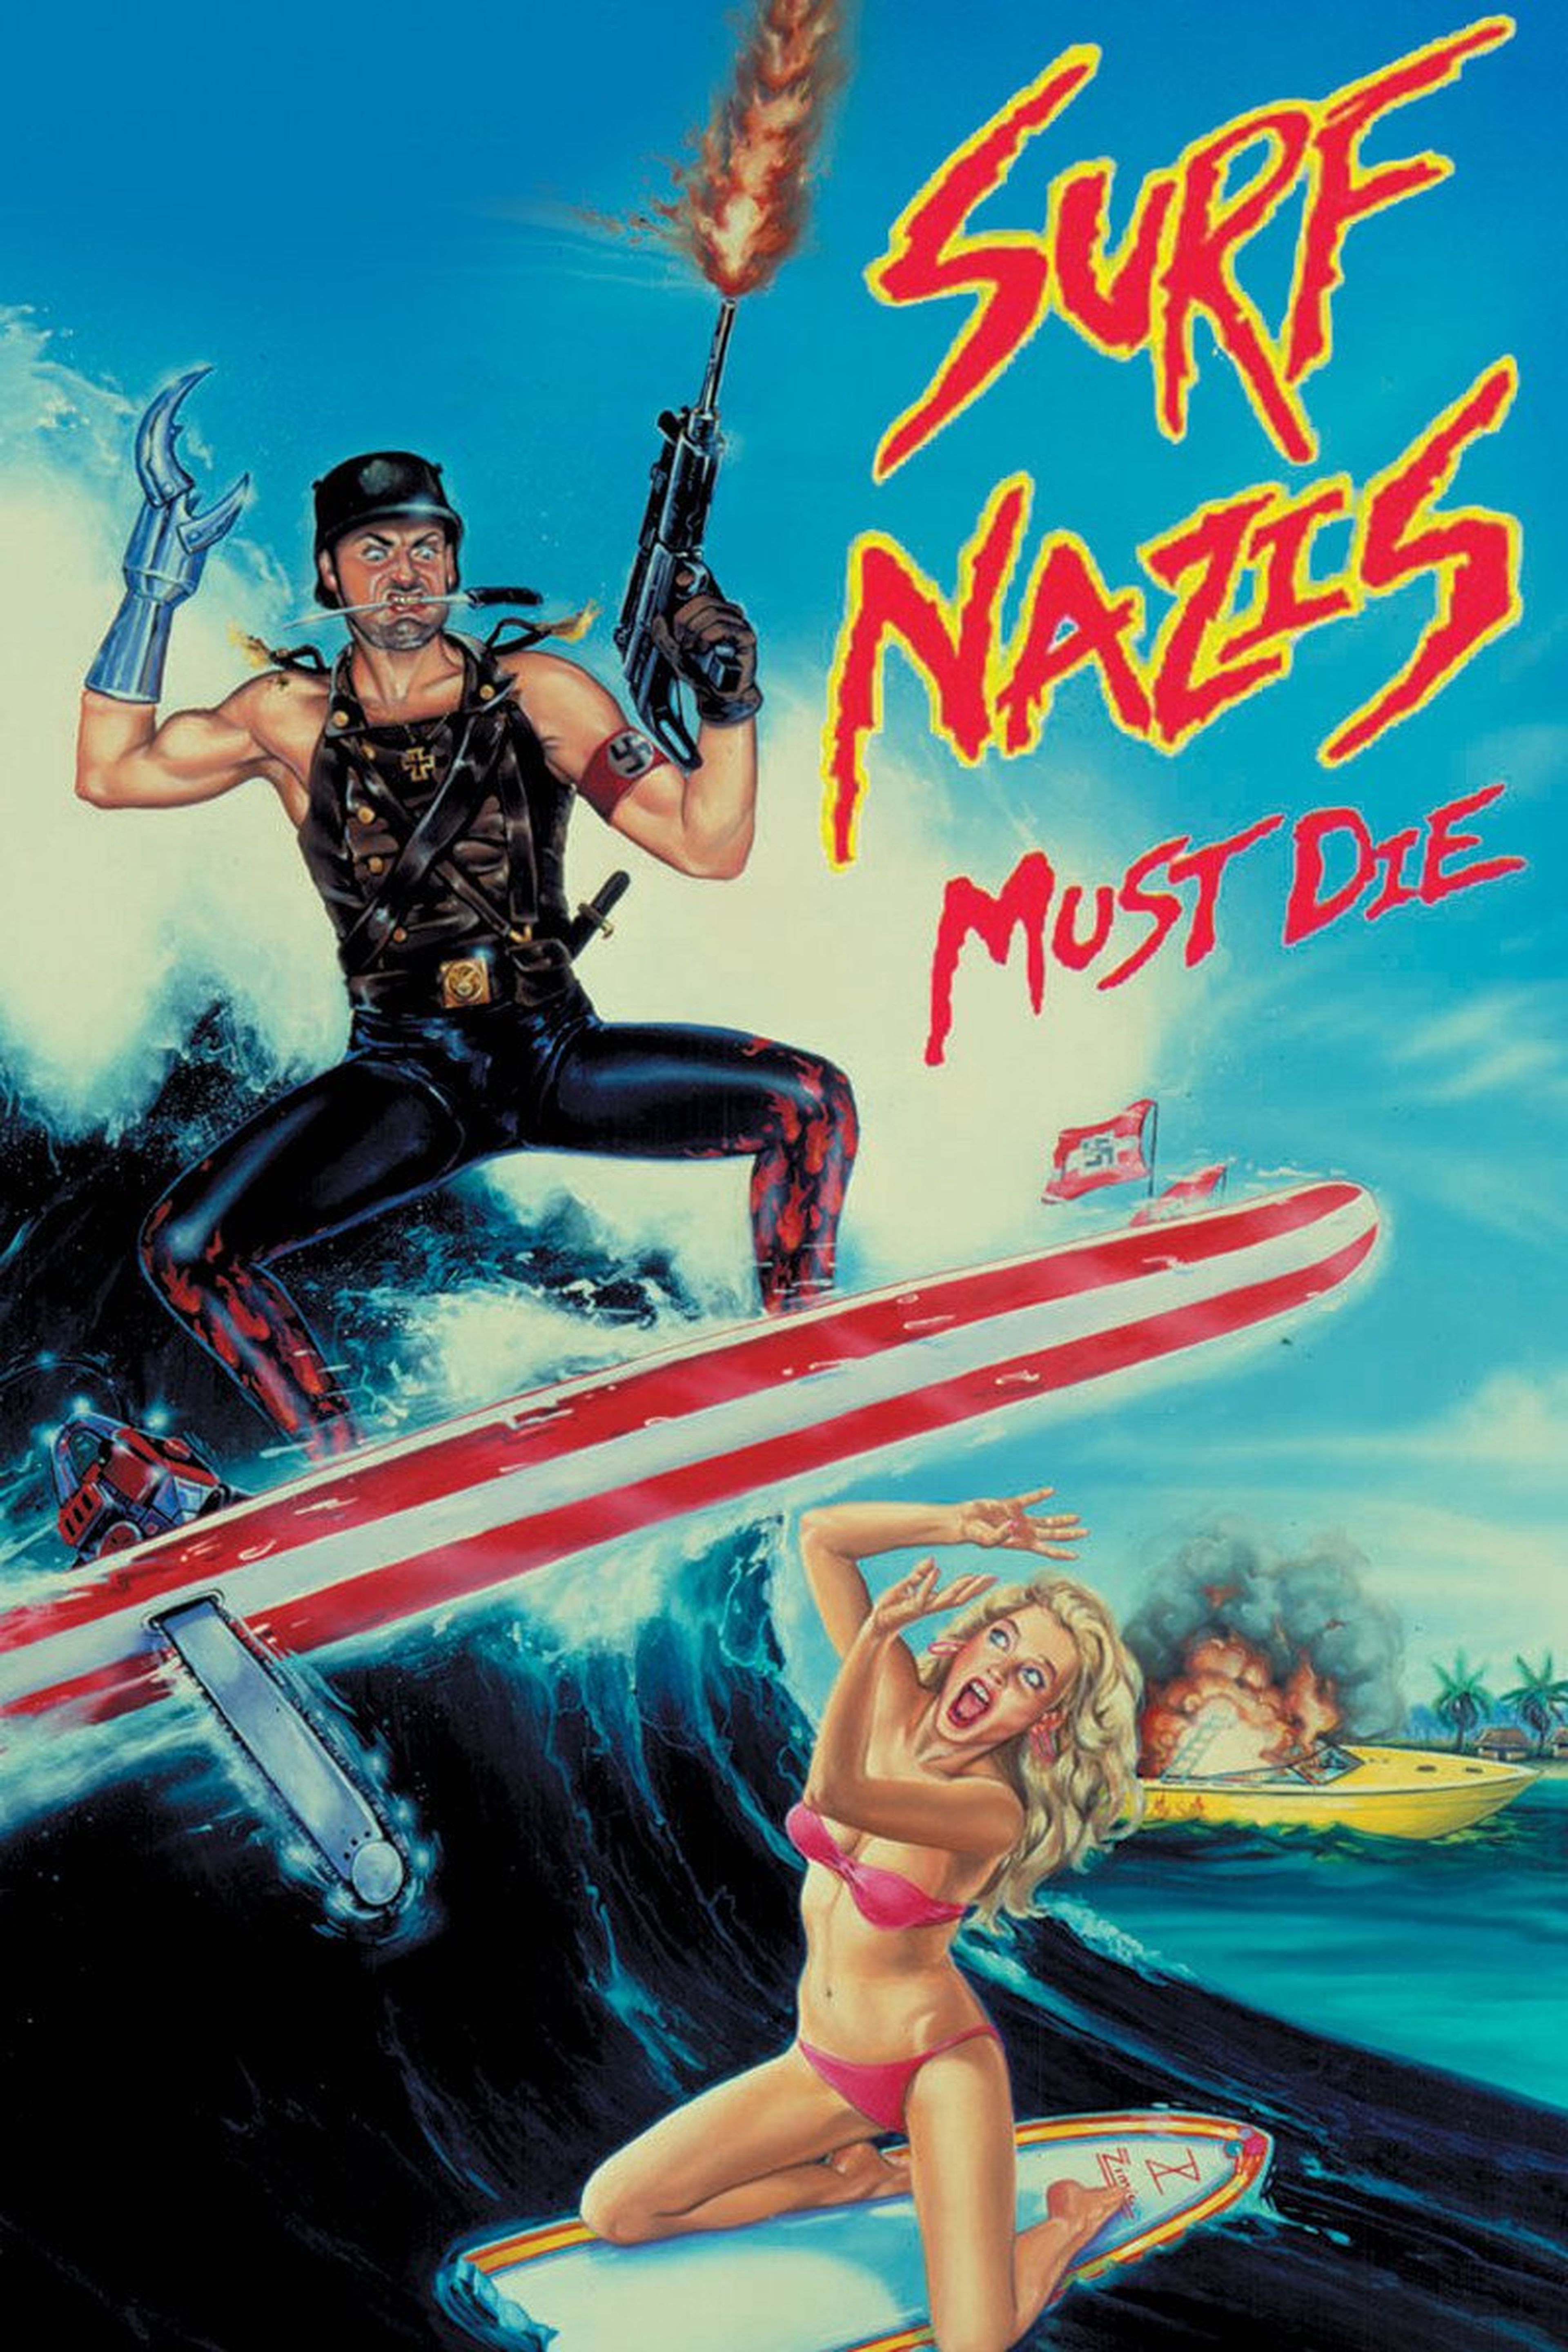 Los surfistas nazis deben morir